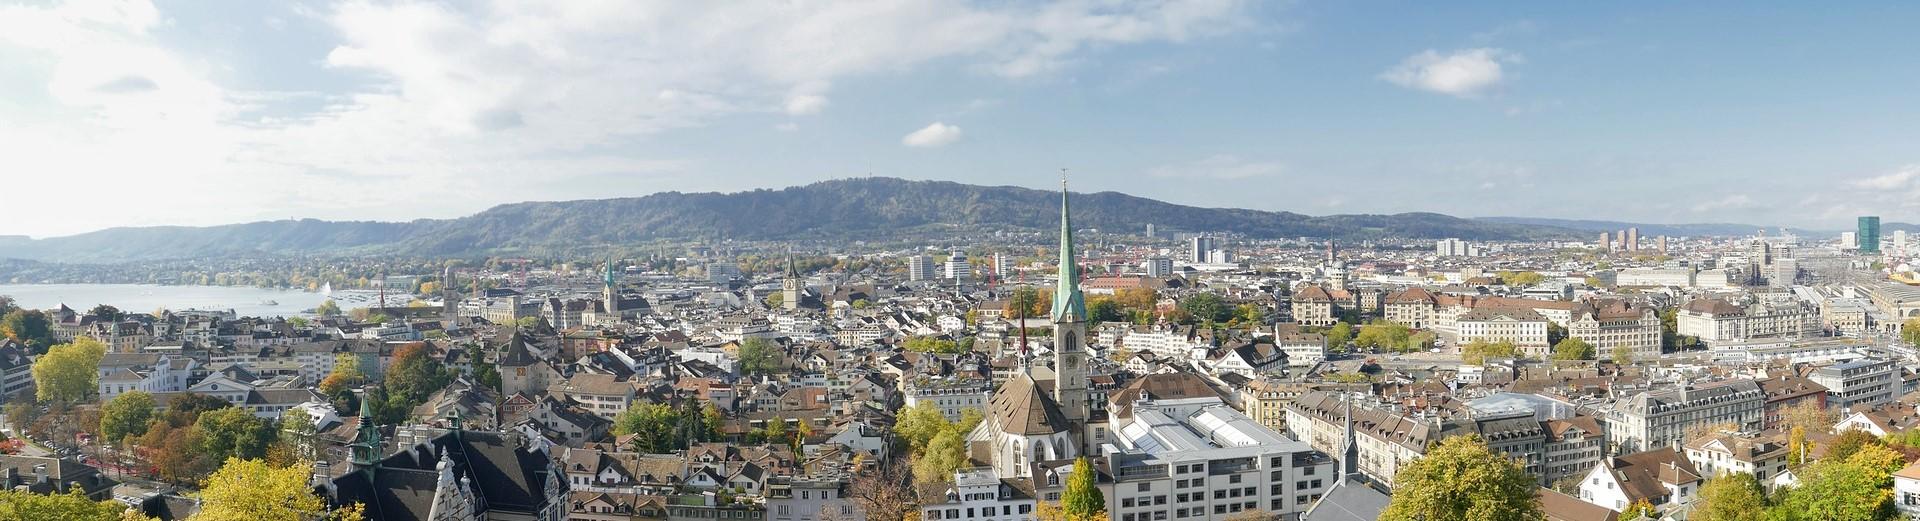 View City of Zurich